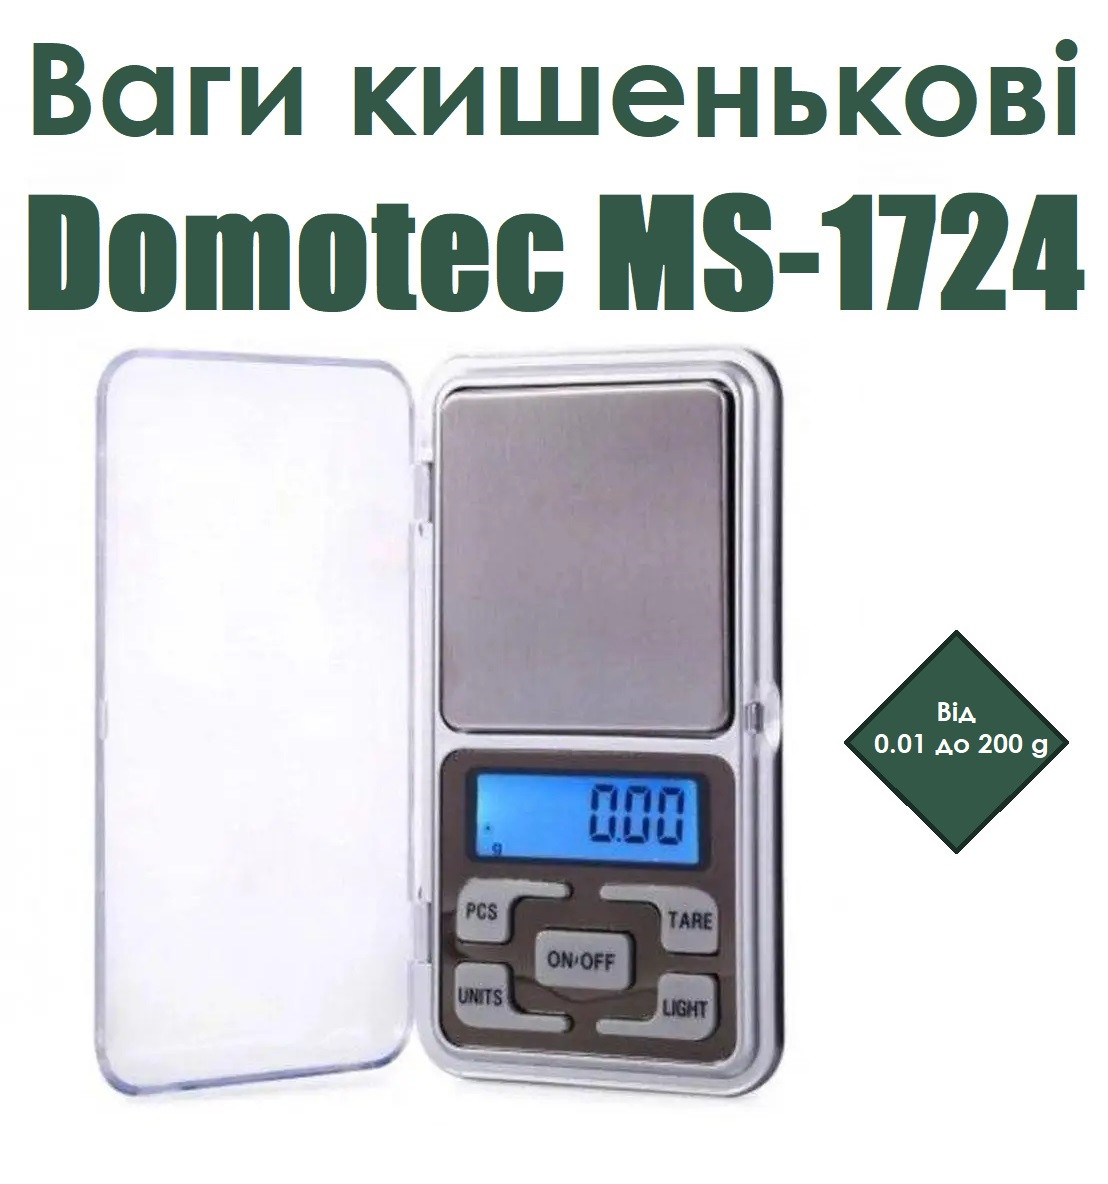 Ваги кишенькові Domotec МS-1724 до 200г